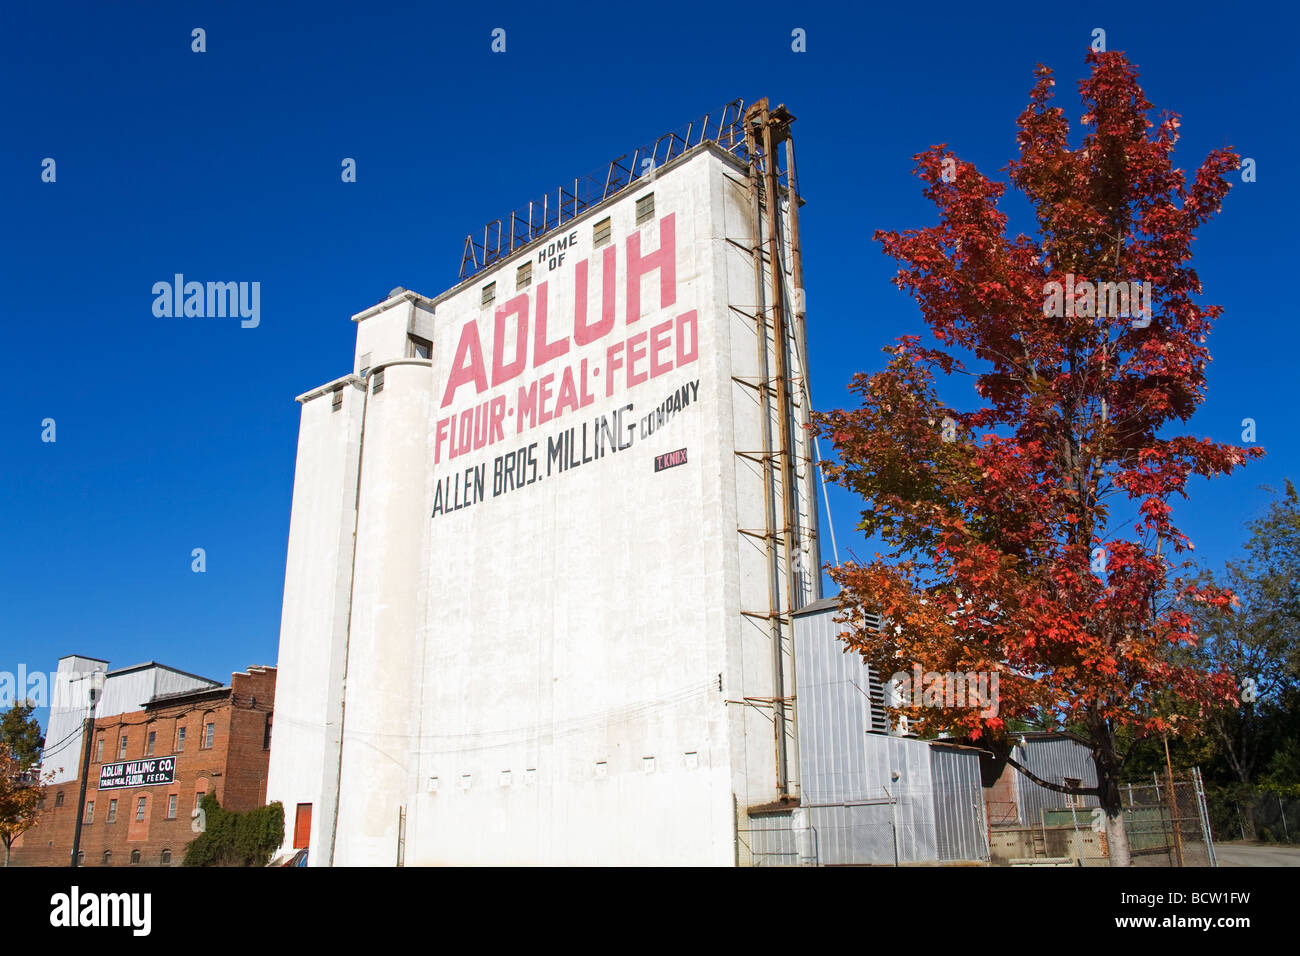 Adluh mulino di farina, Columbia, nella Carolina del Sud, STATI UNITI D'AMERICA Foto Stock